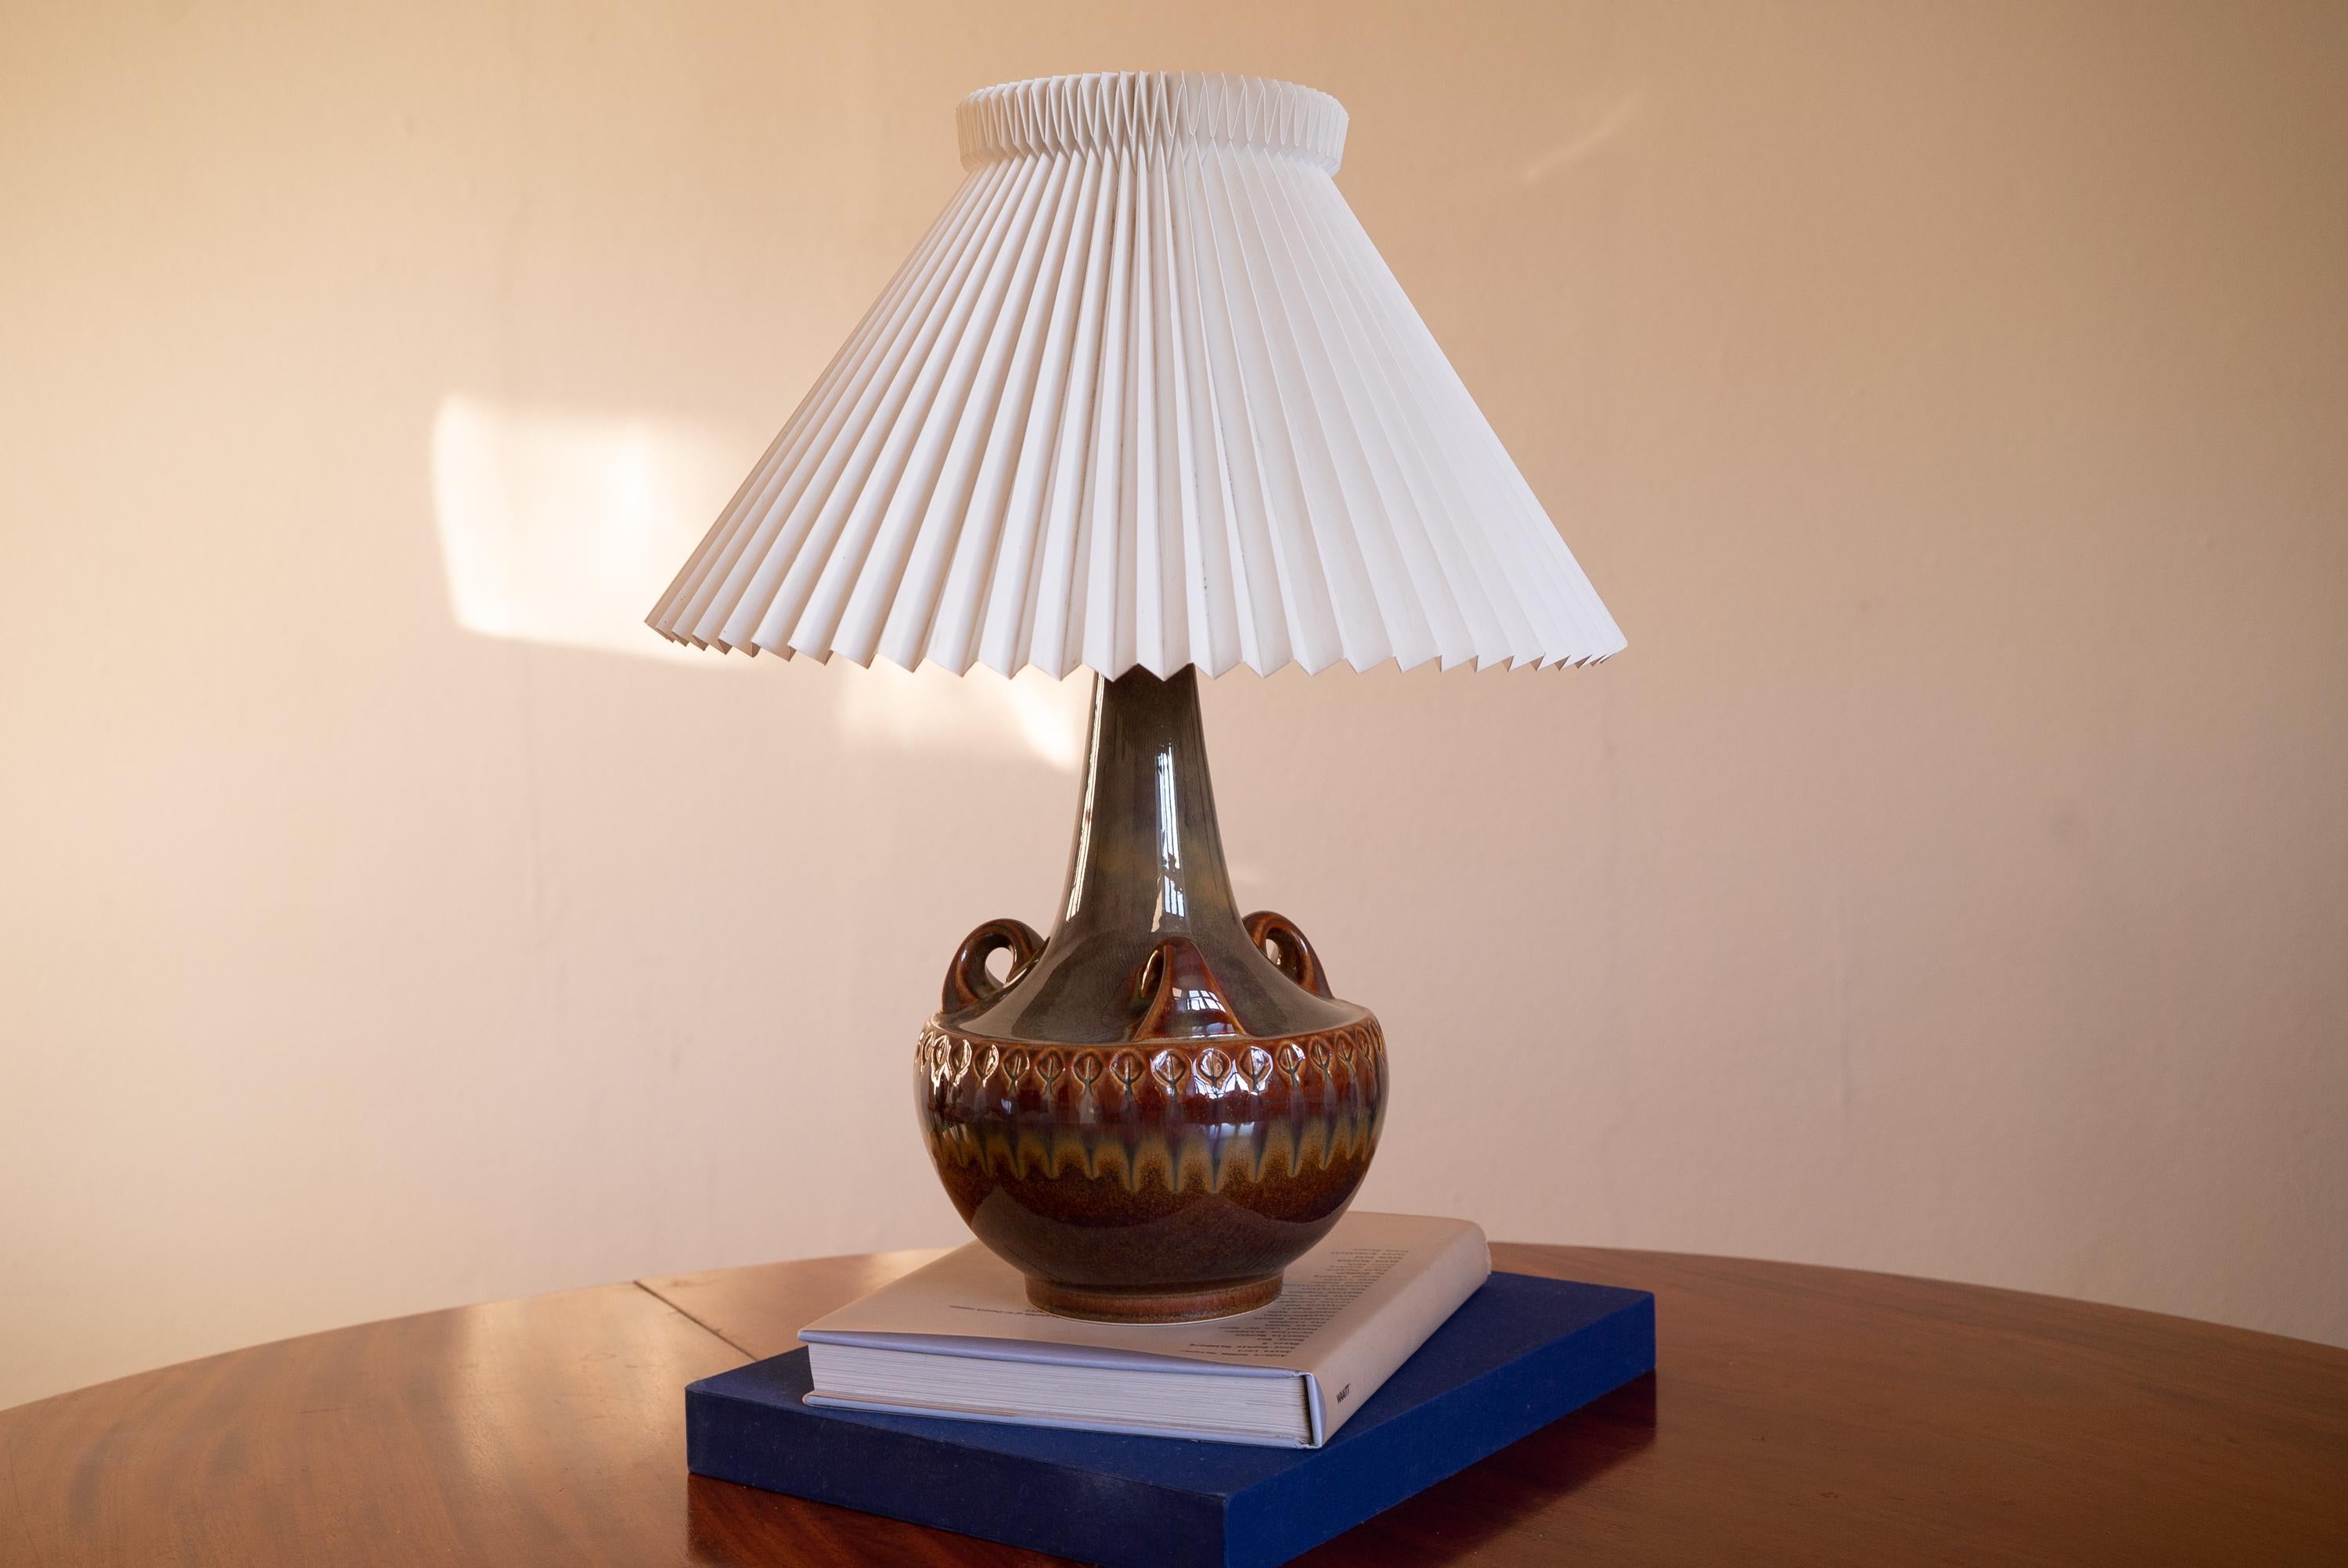 Une grande lampe de table produite par Søholm Keramik, situé sur l'île de Bornholm au Danemark. Elle est dotée d'un décor émaillé très artistique.

Vendu sans abat-jour. Les dimensions indiquées ne comprennent pas l'abat-jour.

La glaçure présente